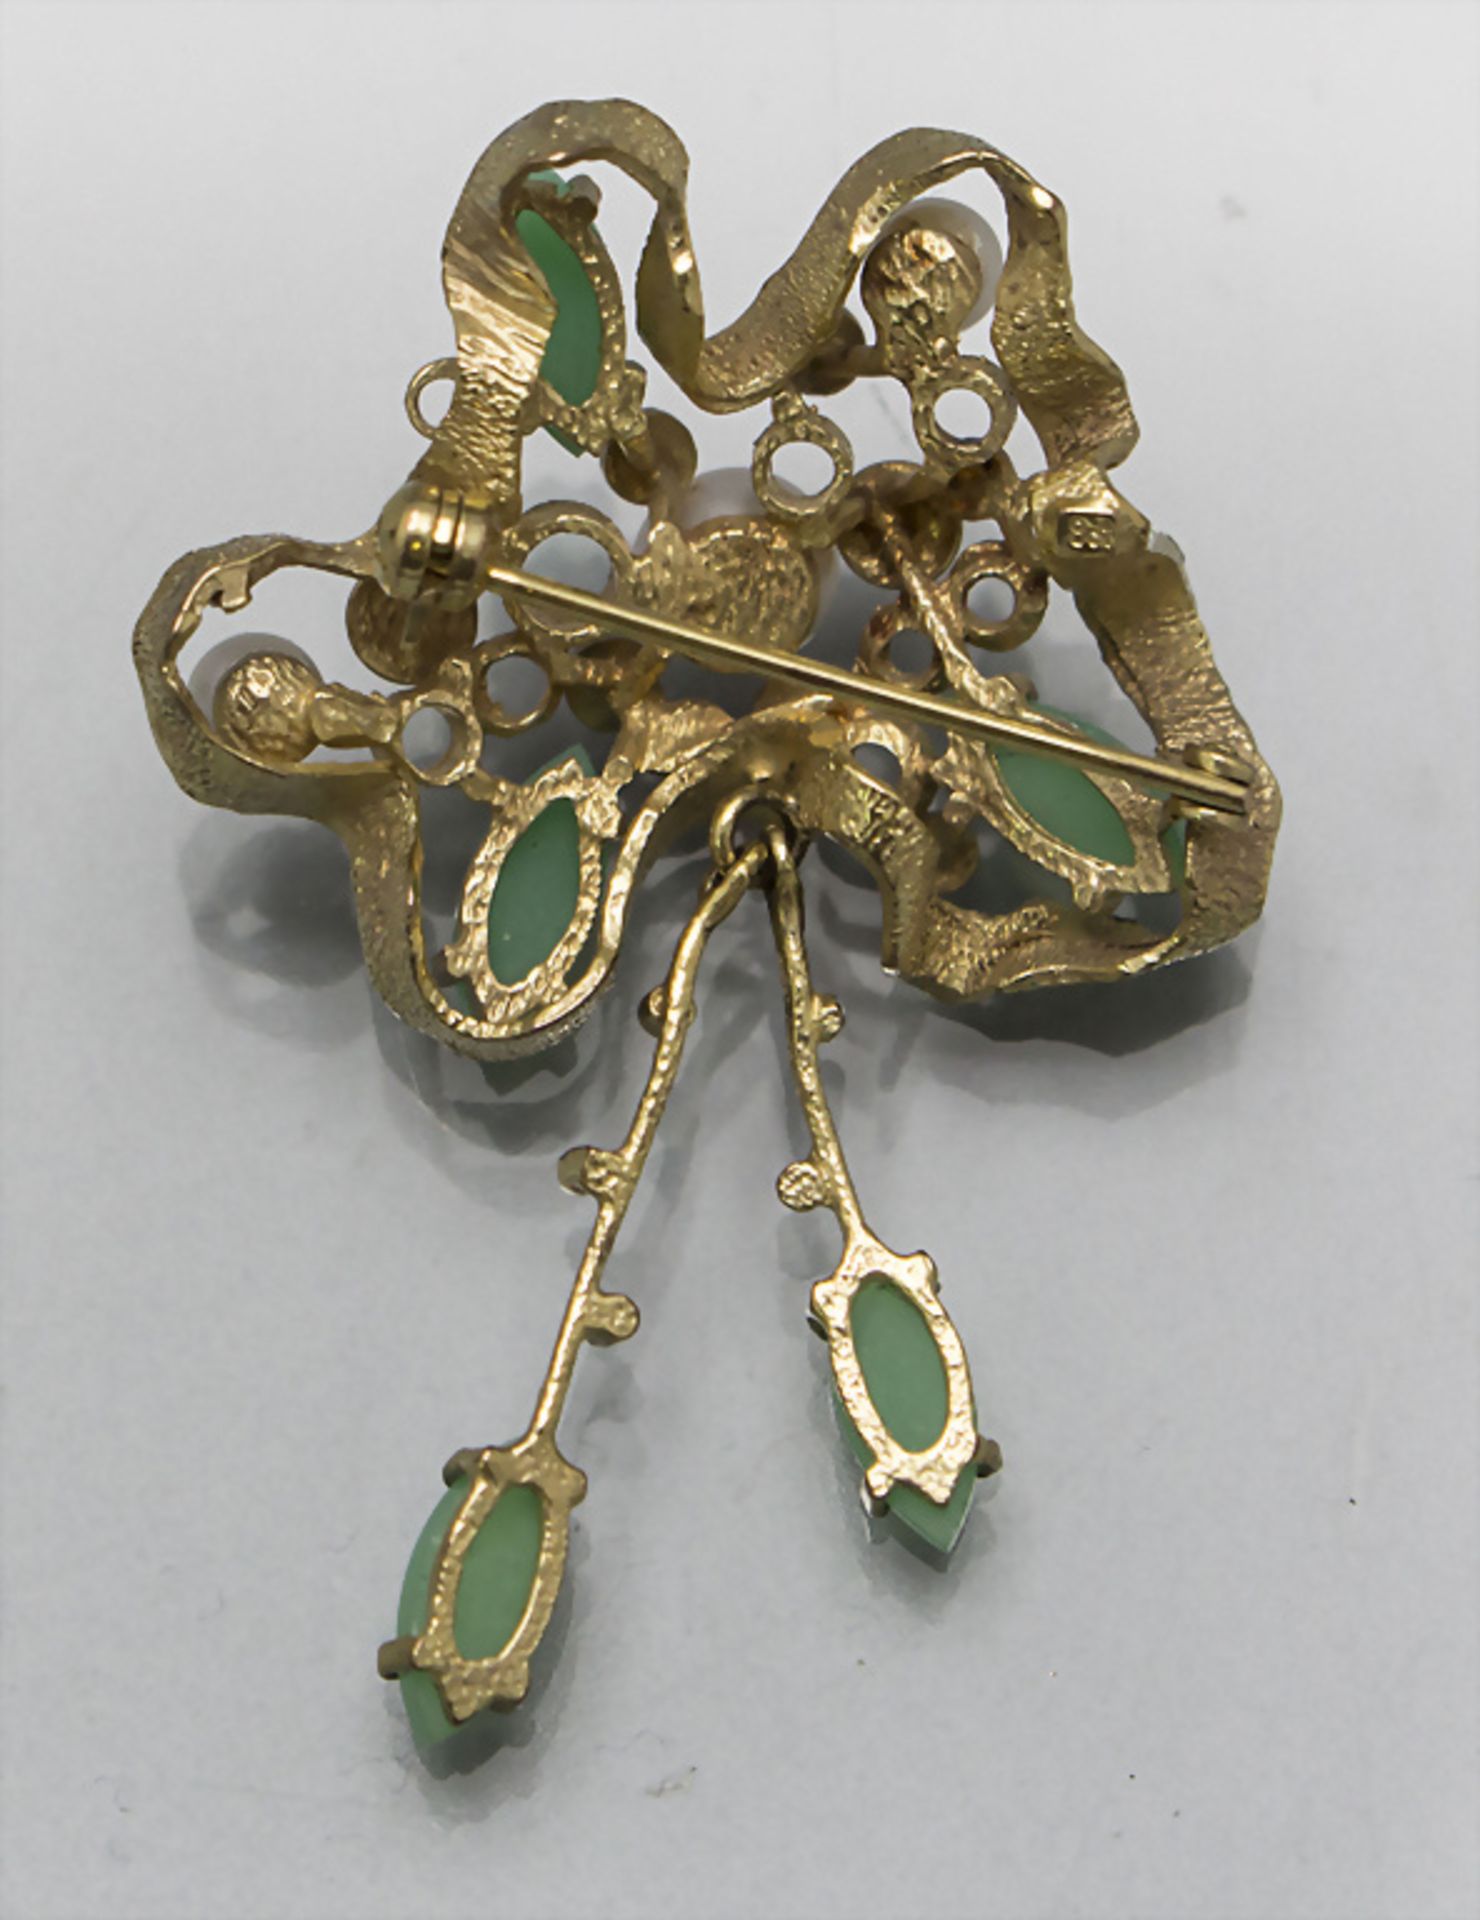 Gelbgold Brosche mit Perlen und Chrysopras / An 8 ct gold brooch with pearls and chrysoprase, ... - Image 3 of 3